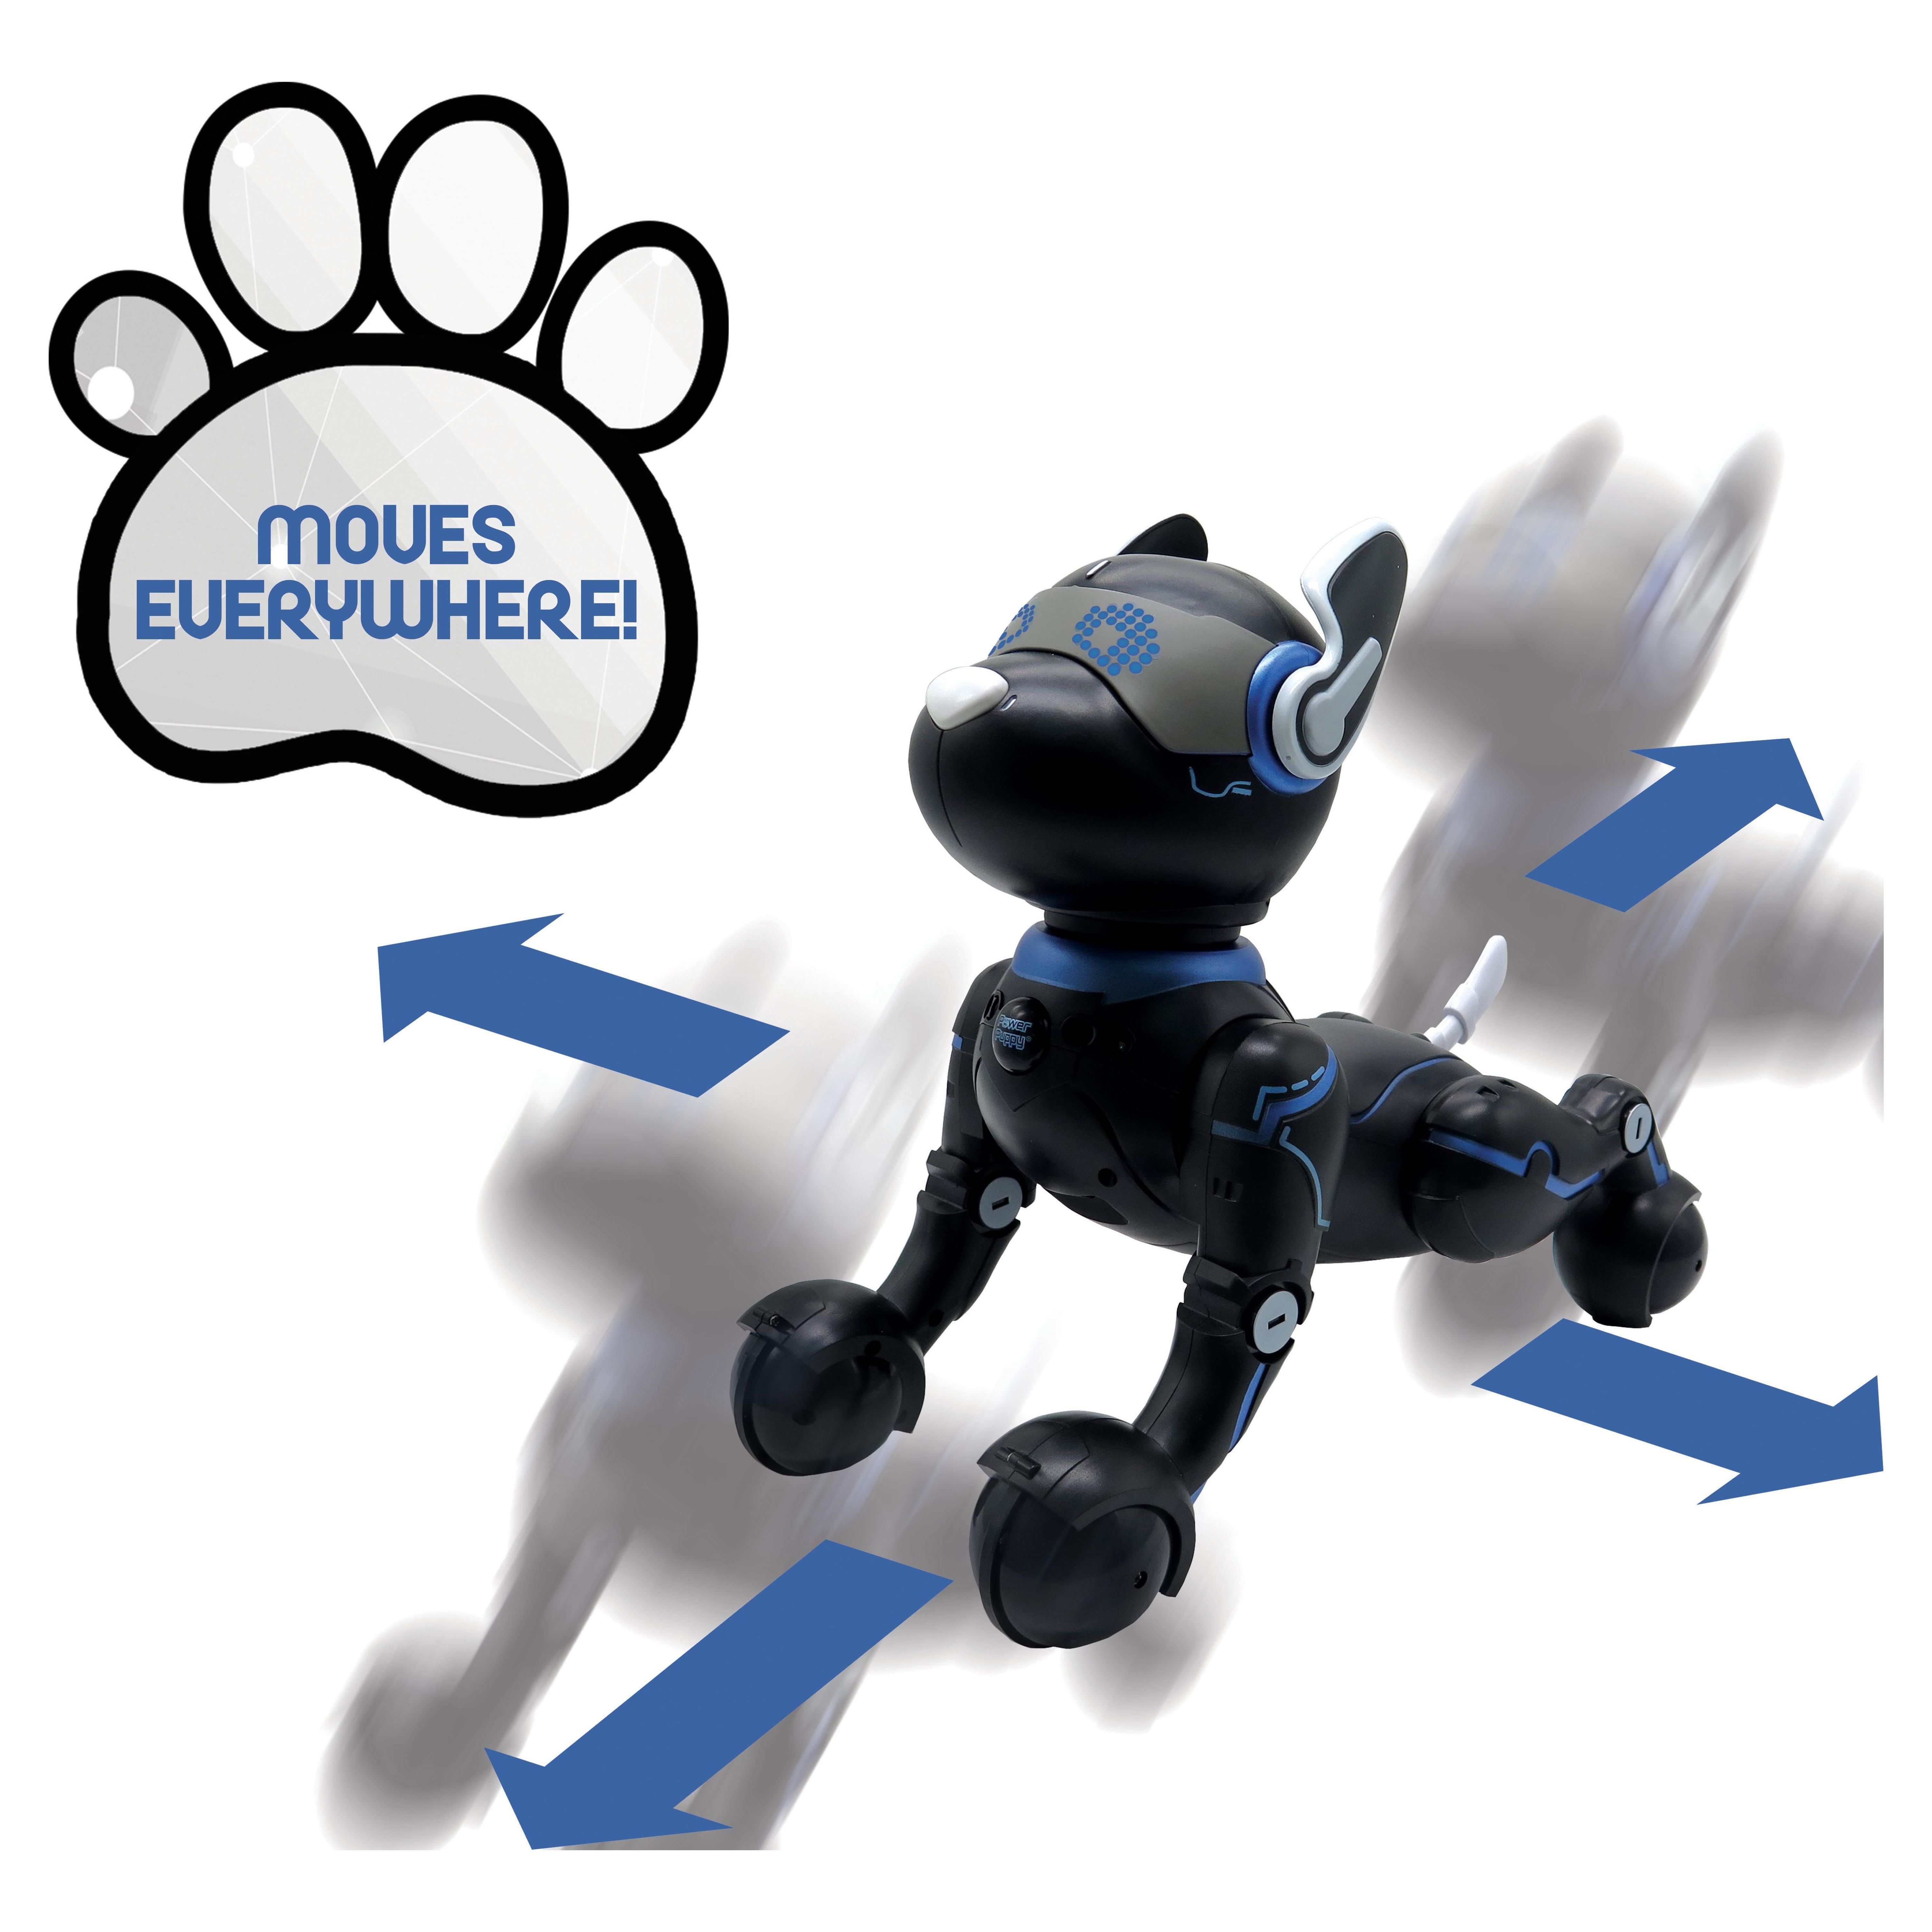 LEXIBOOK Robot télécommandé mon petit chien interactif Power Puppy